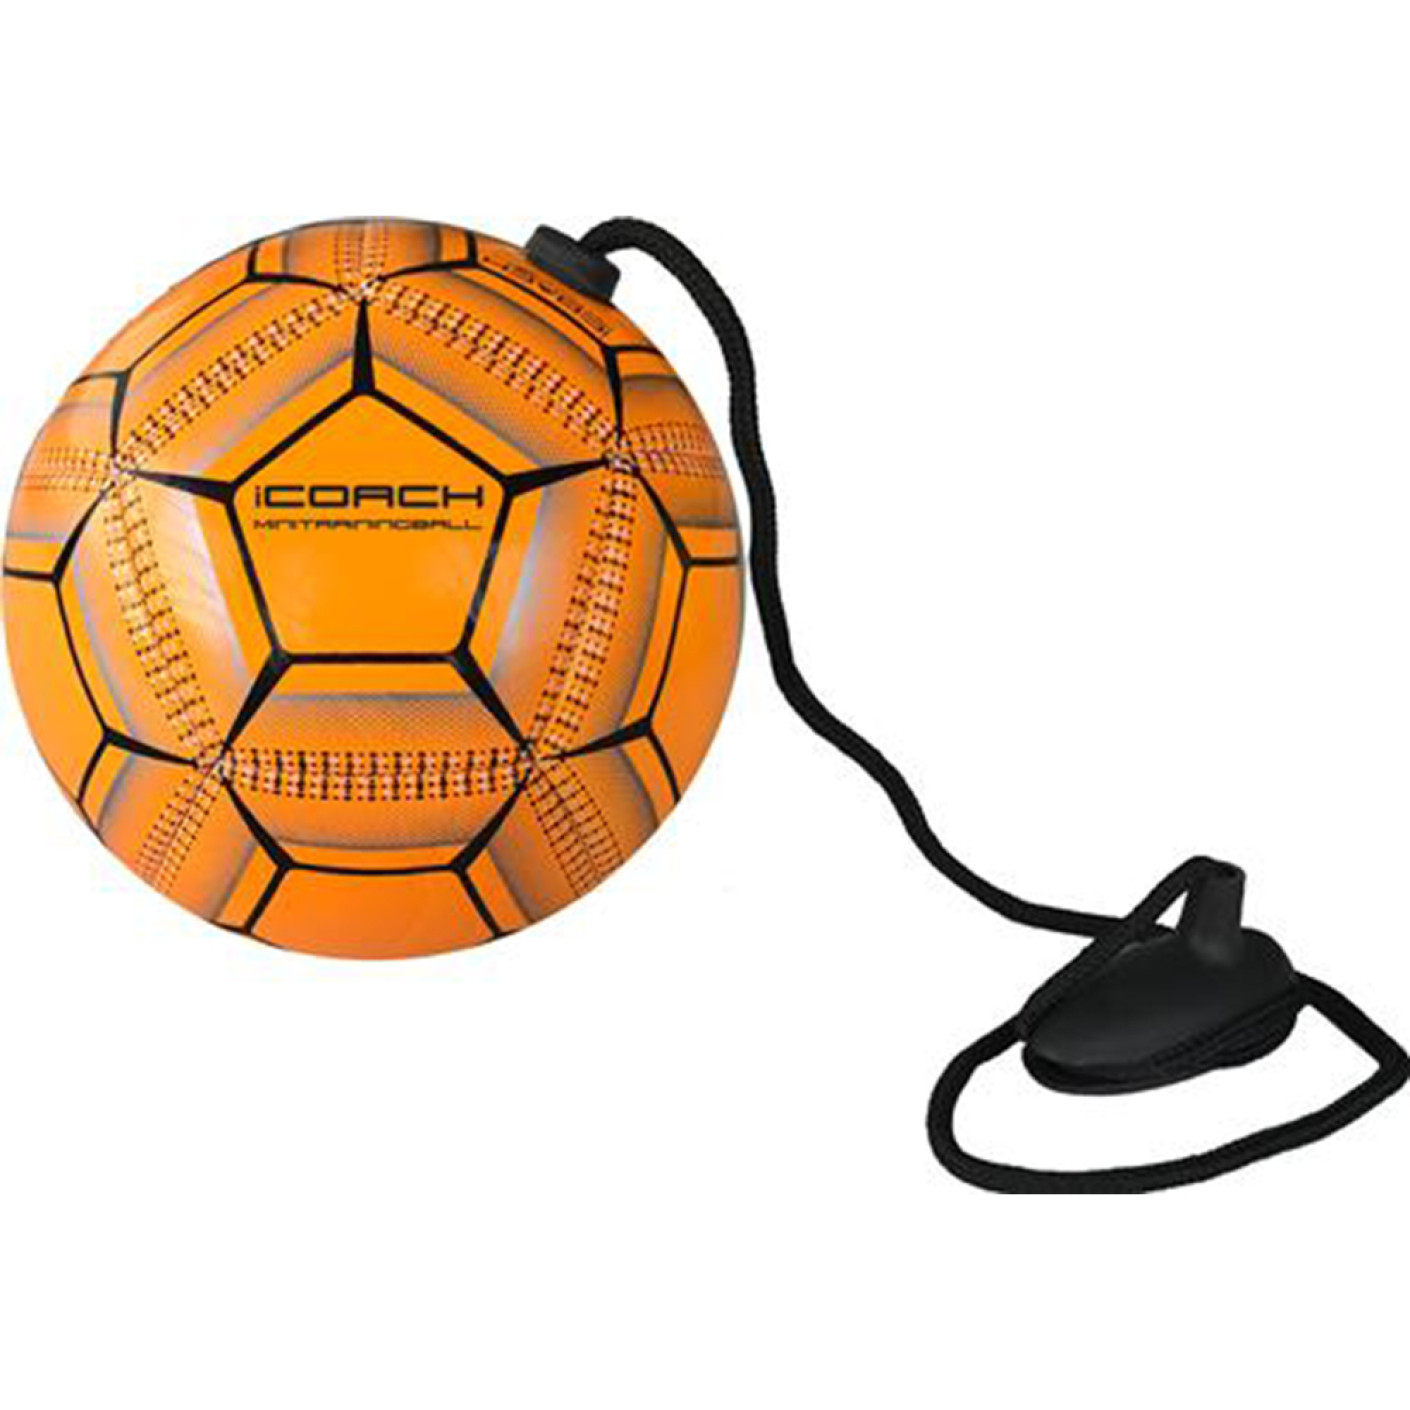 iCoach Mini Training Ball 2.0 Oranje